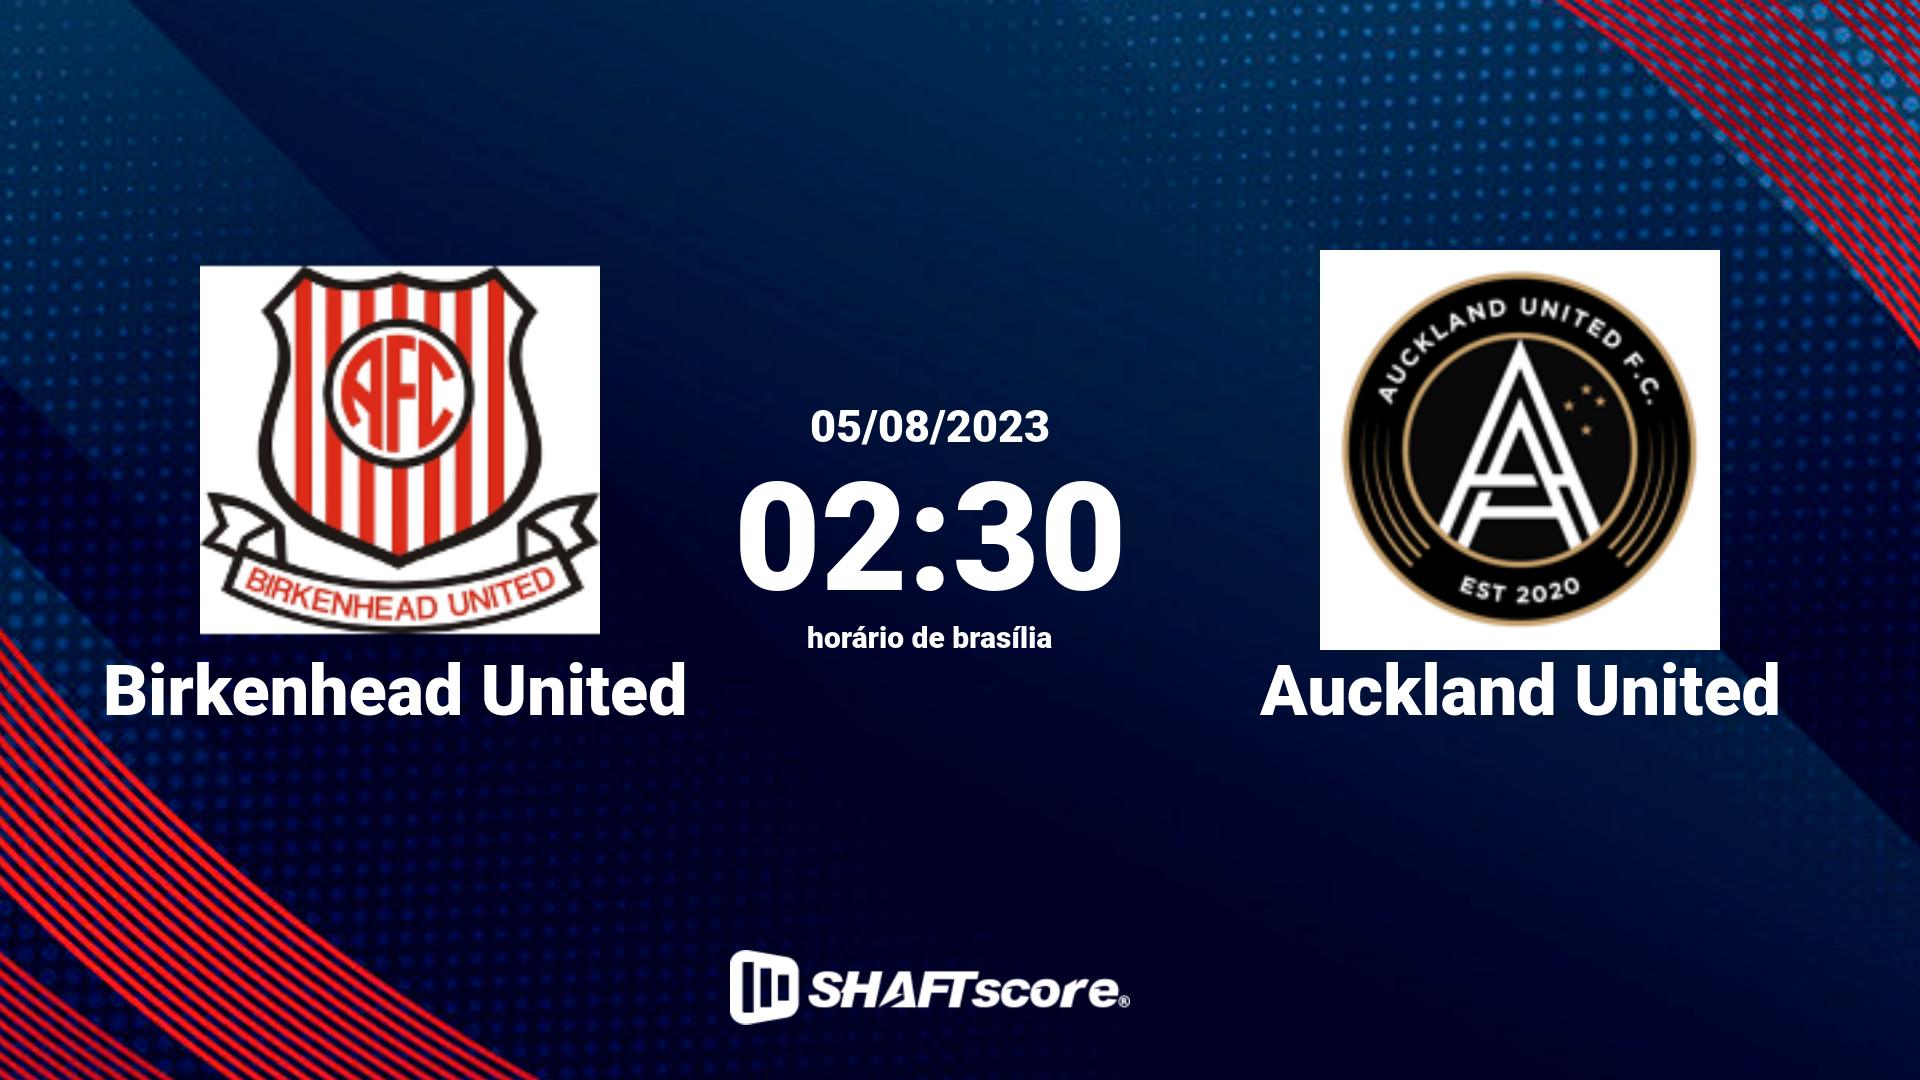 Estatísticas do jogo Birkenhead United vs Auckland United 05.08 02:30